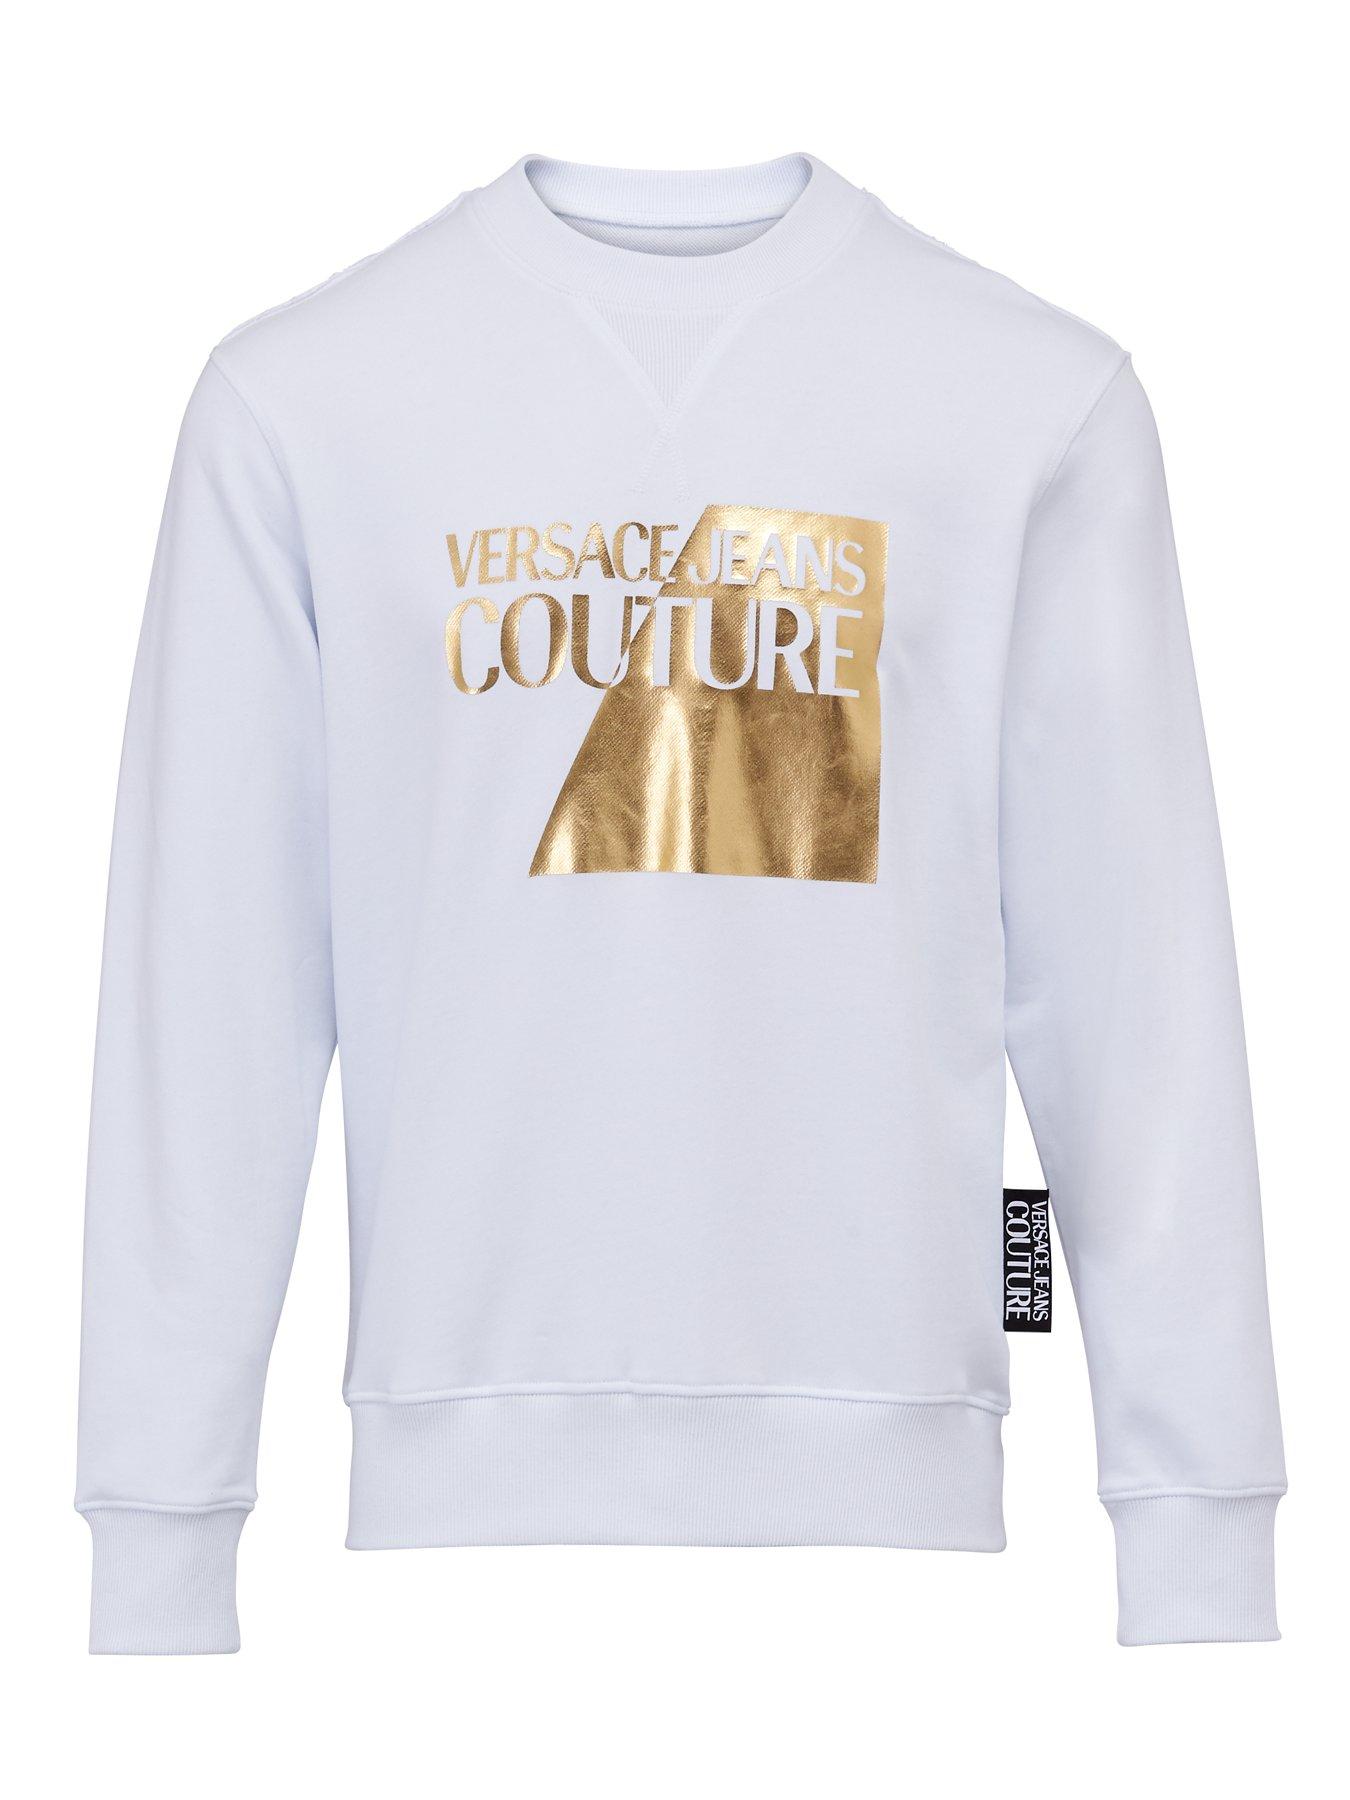 men's versace sweatshirt